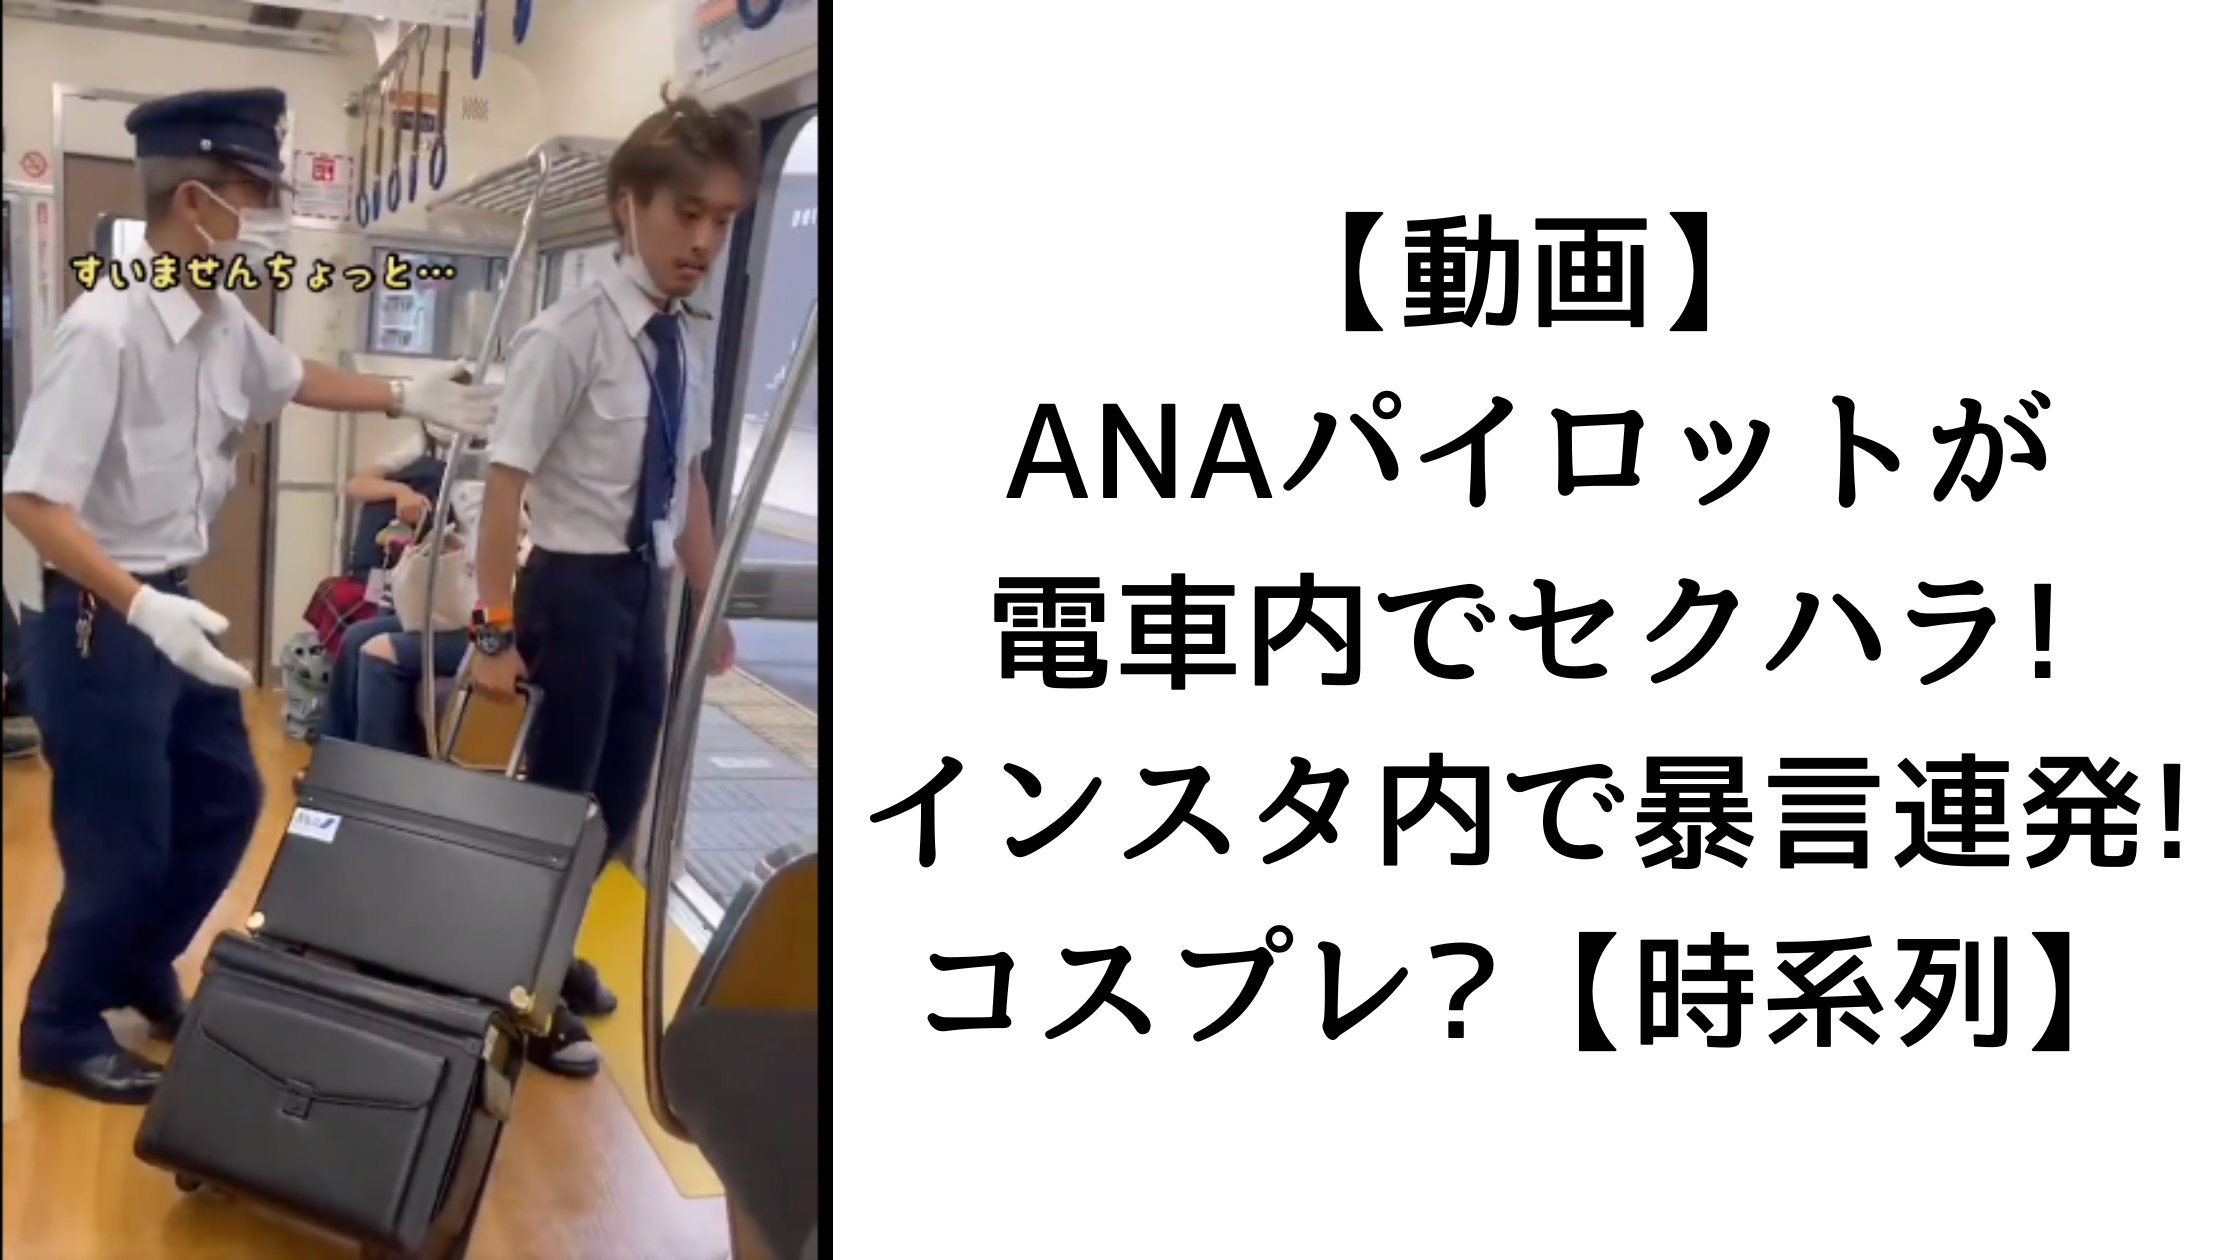 【動画】ANAパイロットが電車内でセクハラ!インスタ内で暴言連発!コスプレ?【時系列】